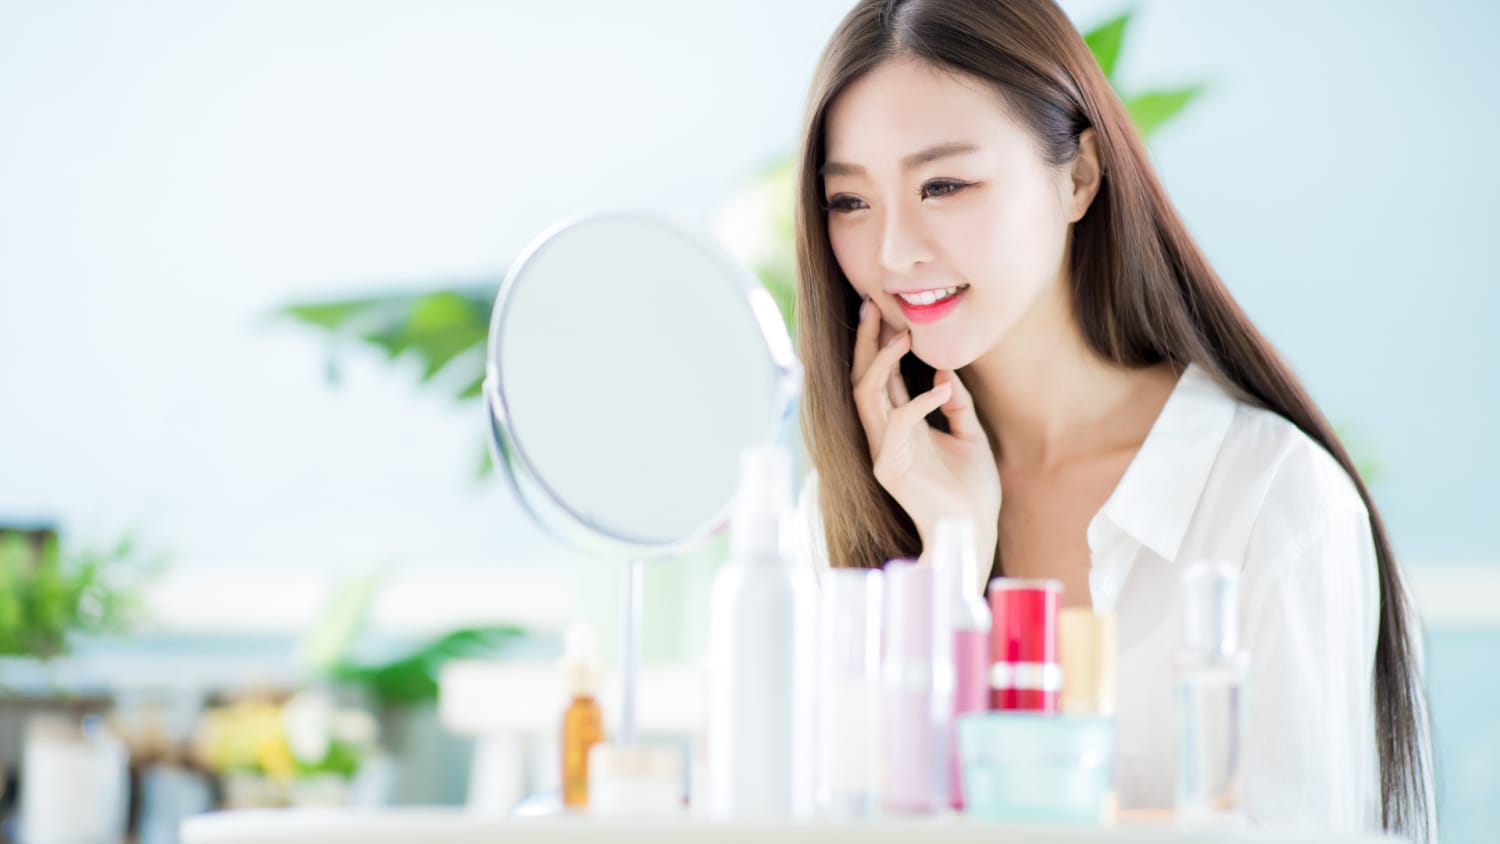 One minute method - the secret of Korean’s beauty.